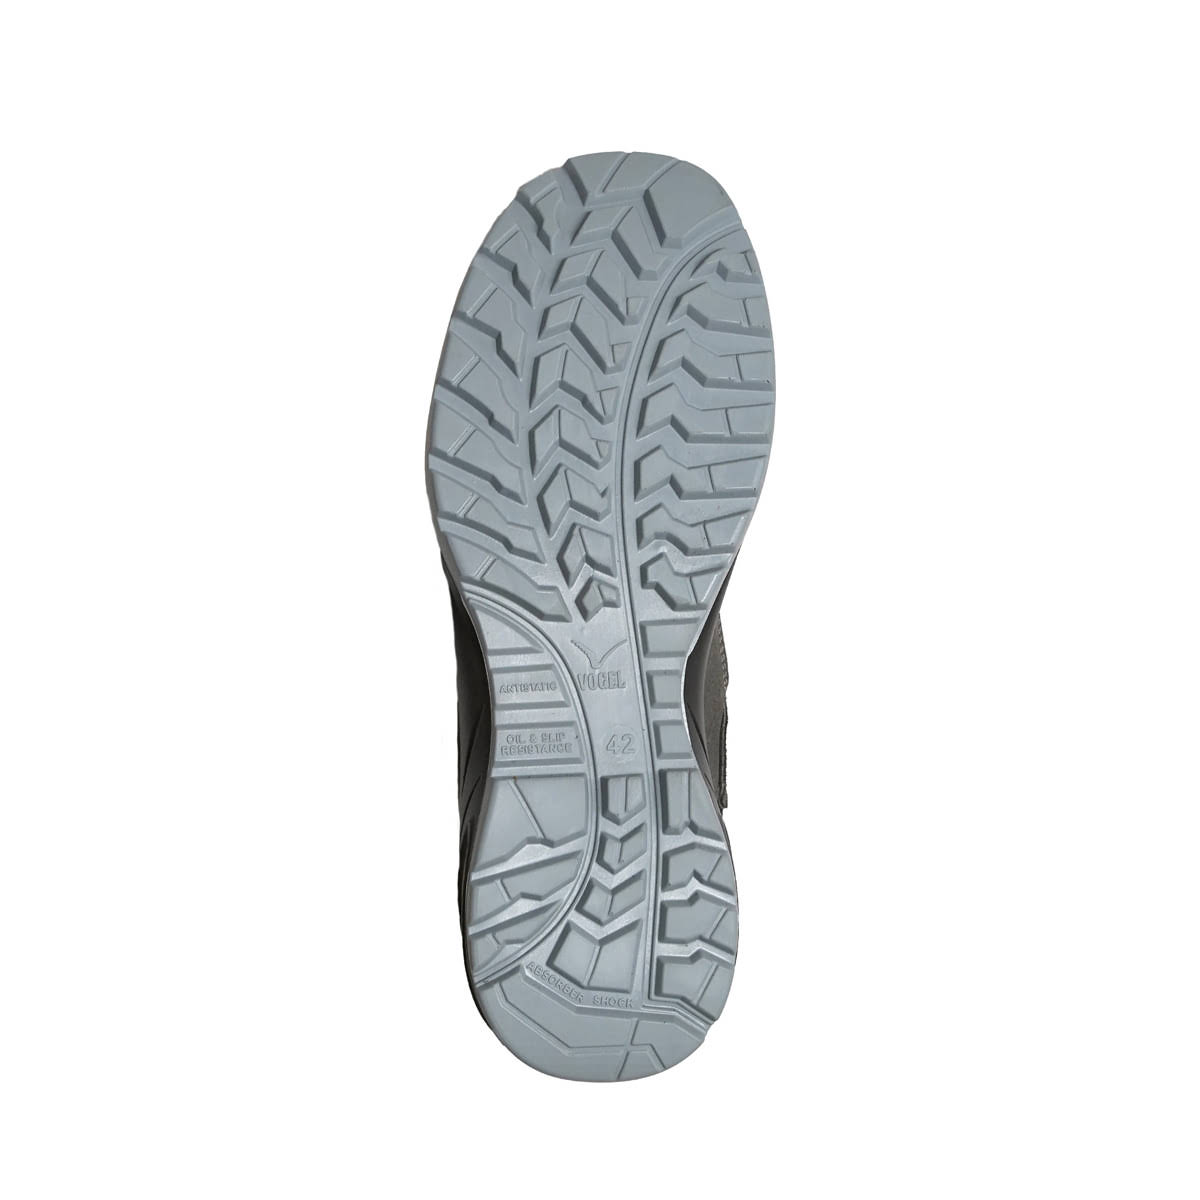 1100 Süet İş Güvenliği Ayakkabısı sivri cisimlerin batmaması için özel Kevlar Tabanlı